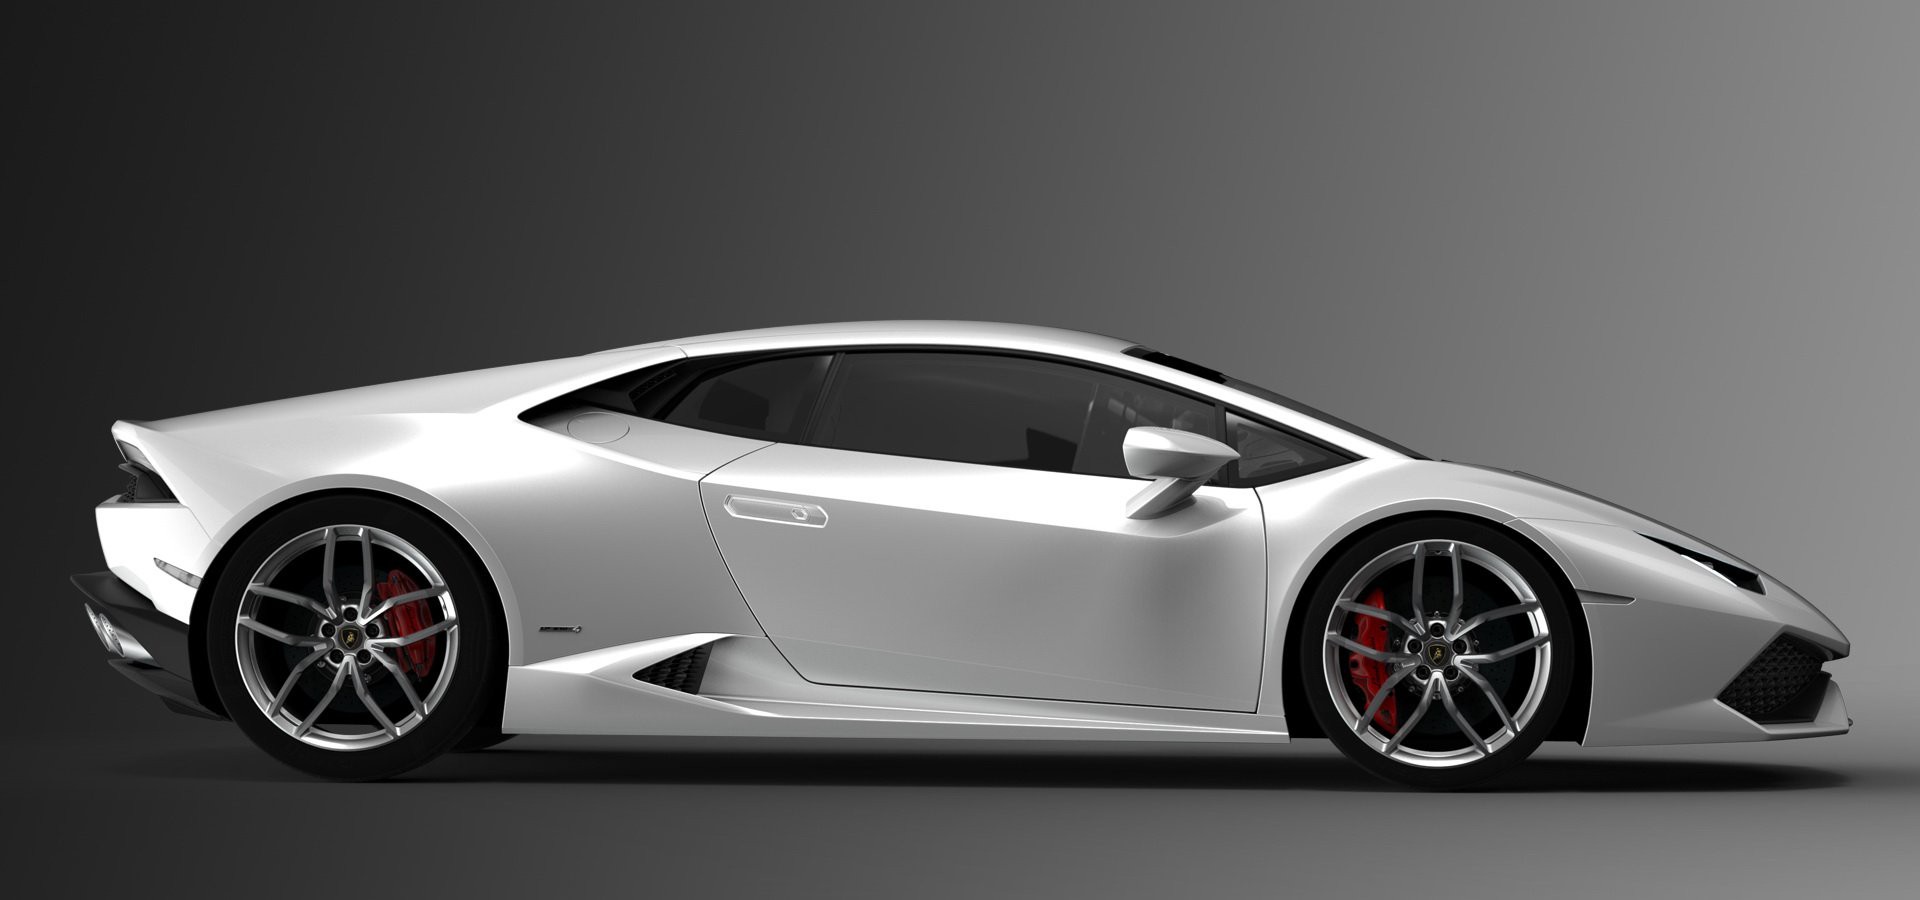 So găng Lamborghini Huracan EVO 2020 và Huracan LP610-4